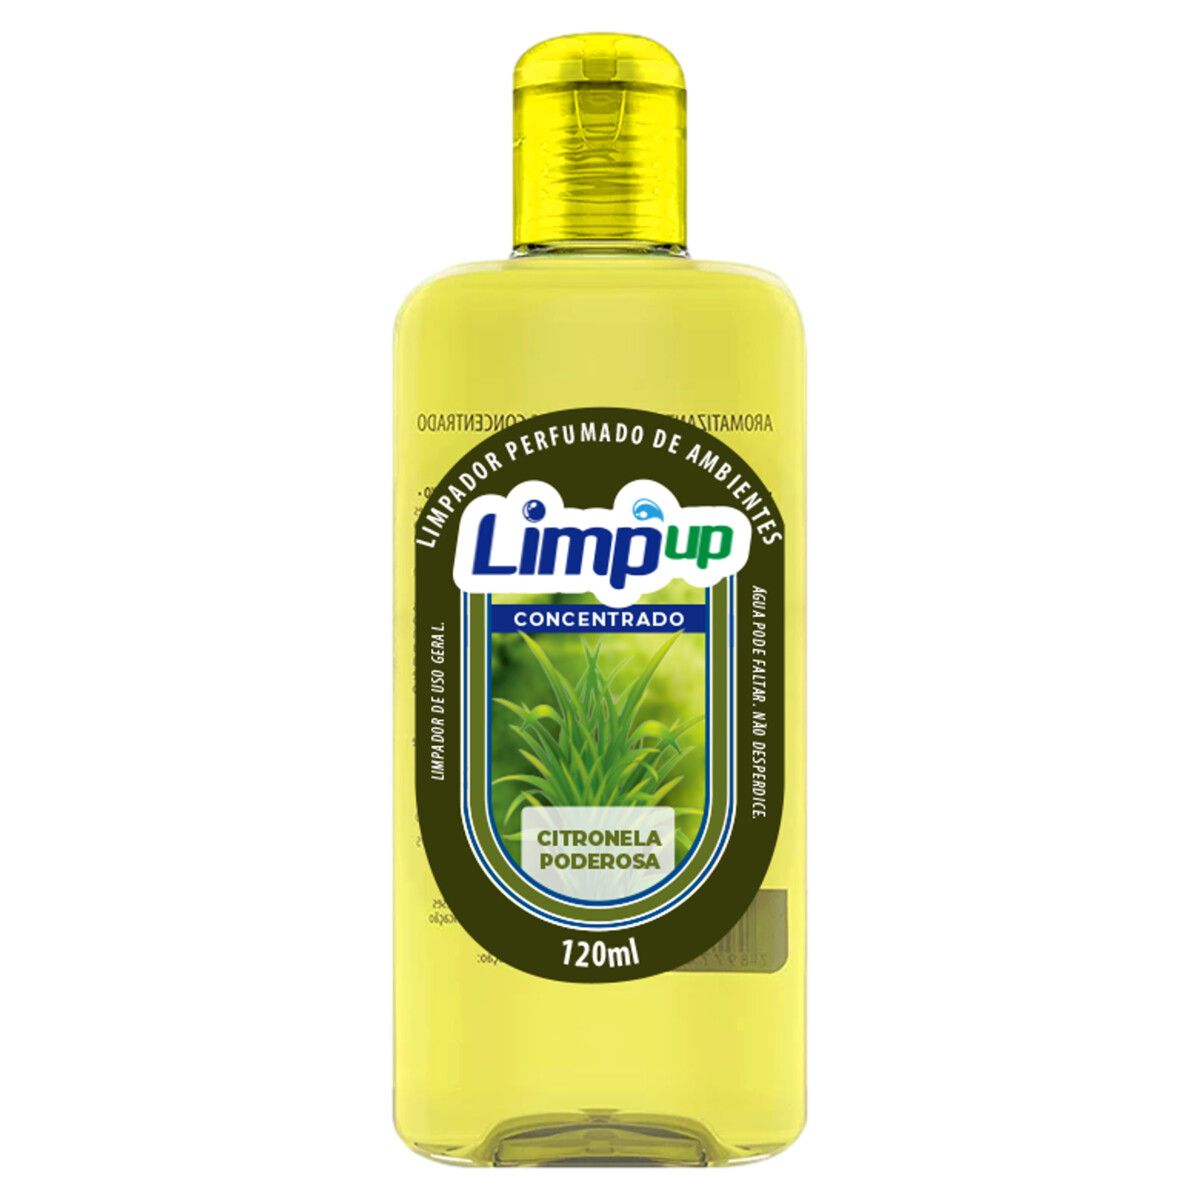 Limpador Perfumado Concentrado Limp Up Citronela Poderosa 120ml